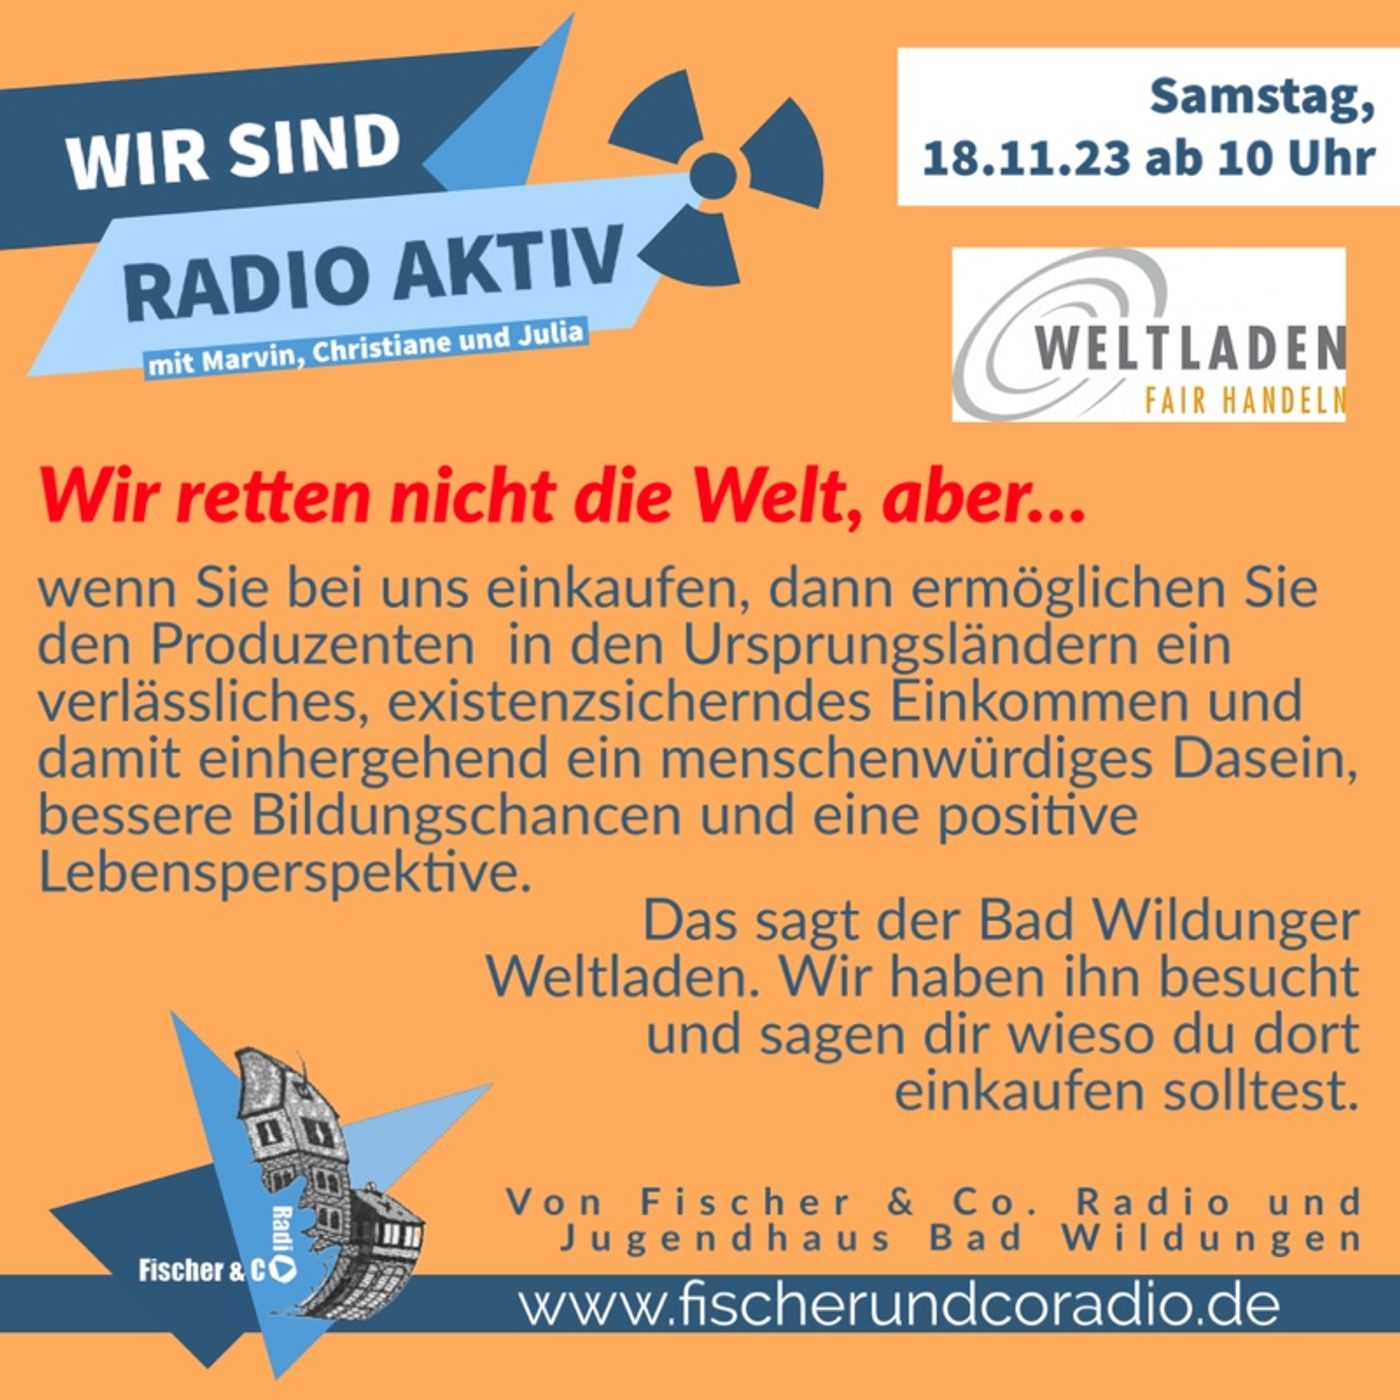 Bad Wildunger Weltladen - WIR SIND RADIO AKTIV